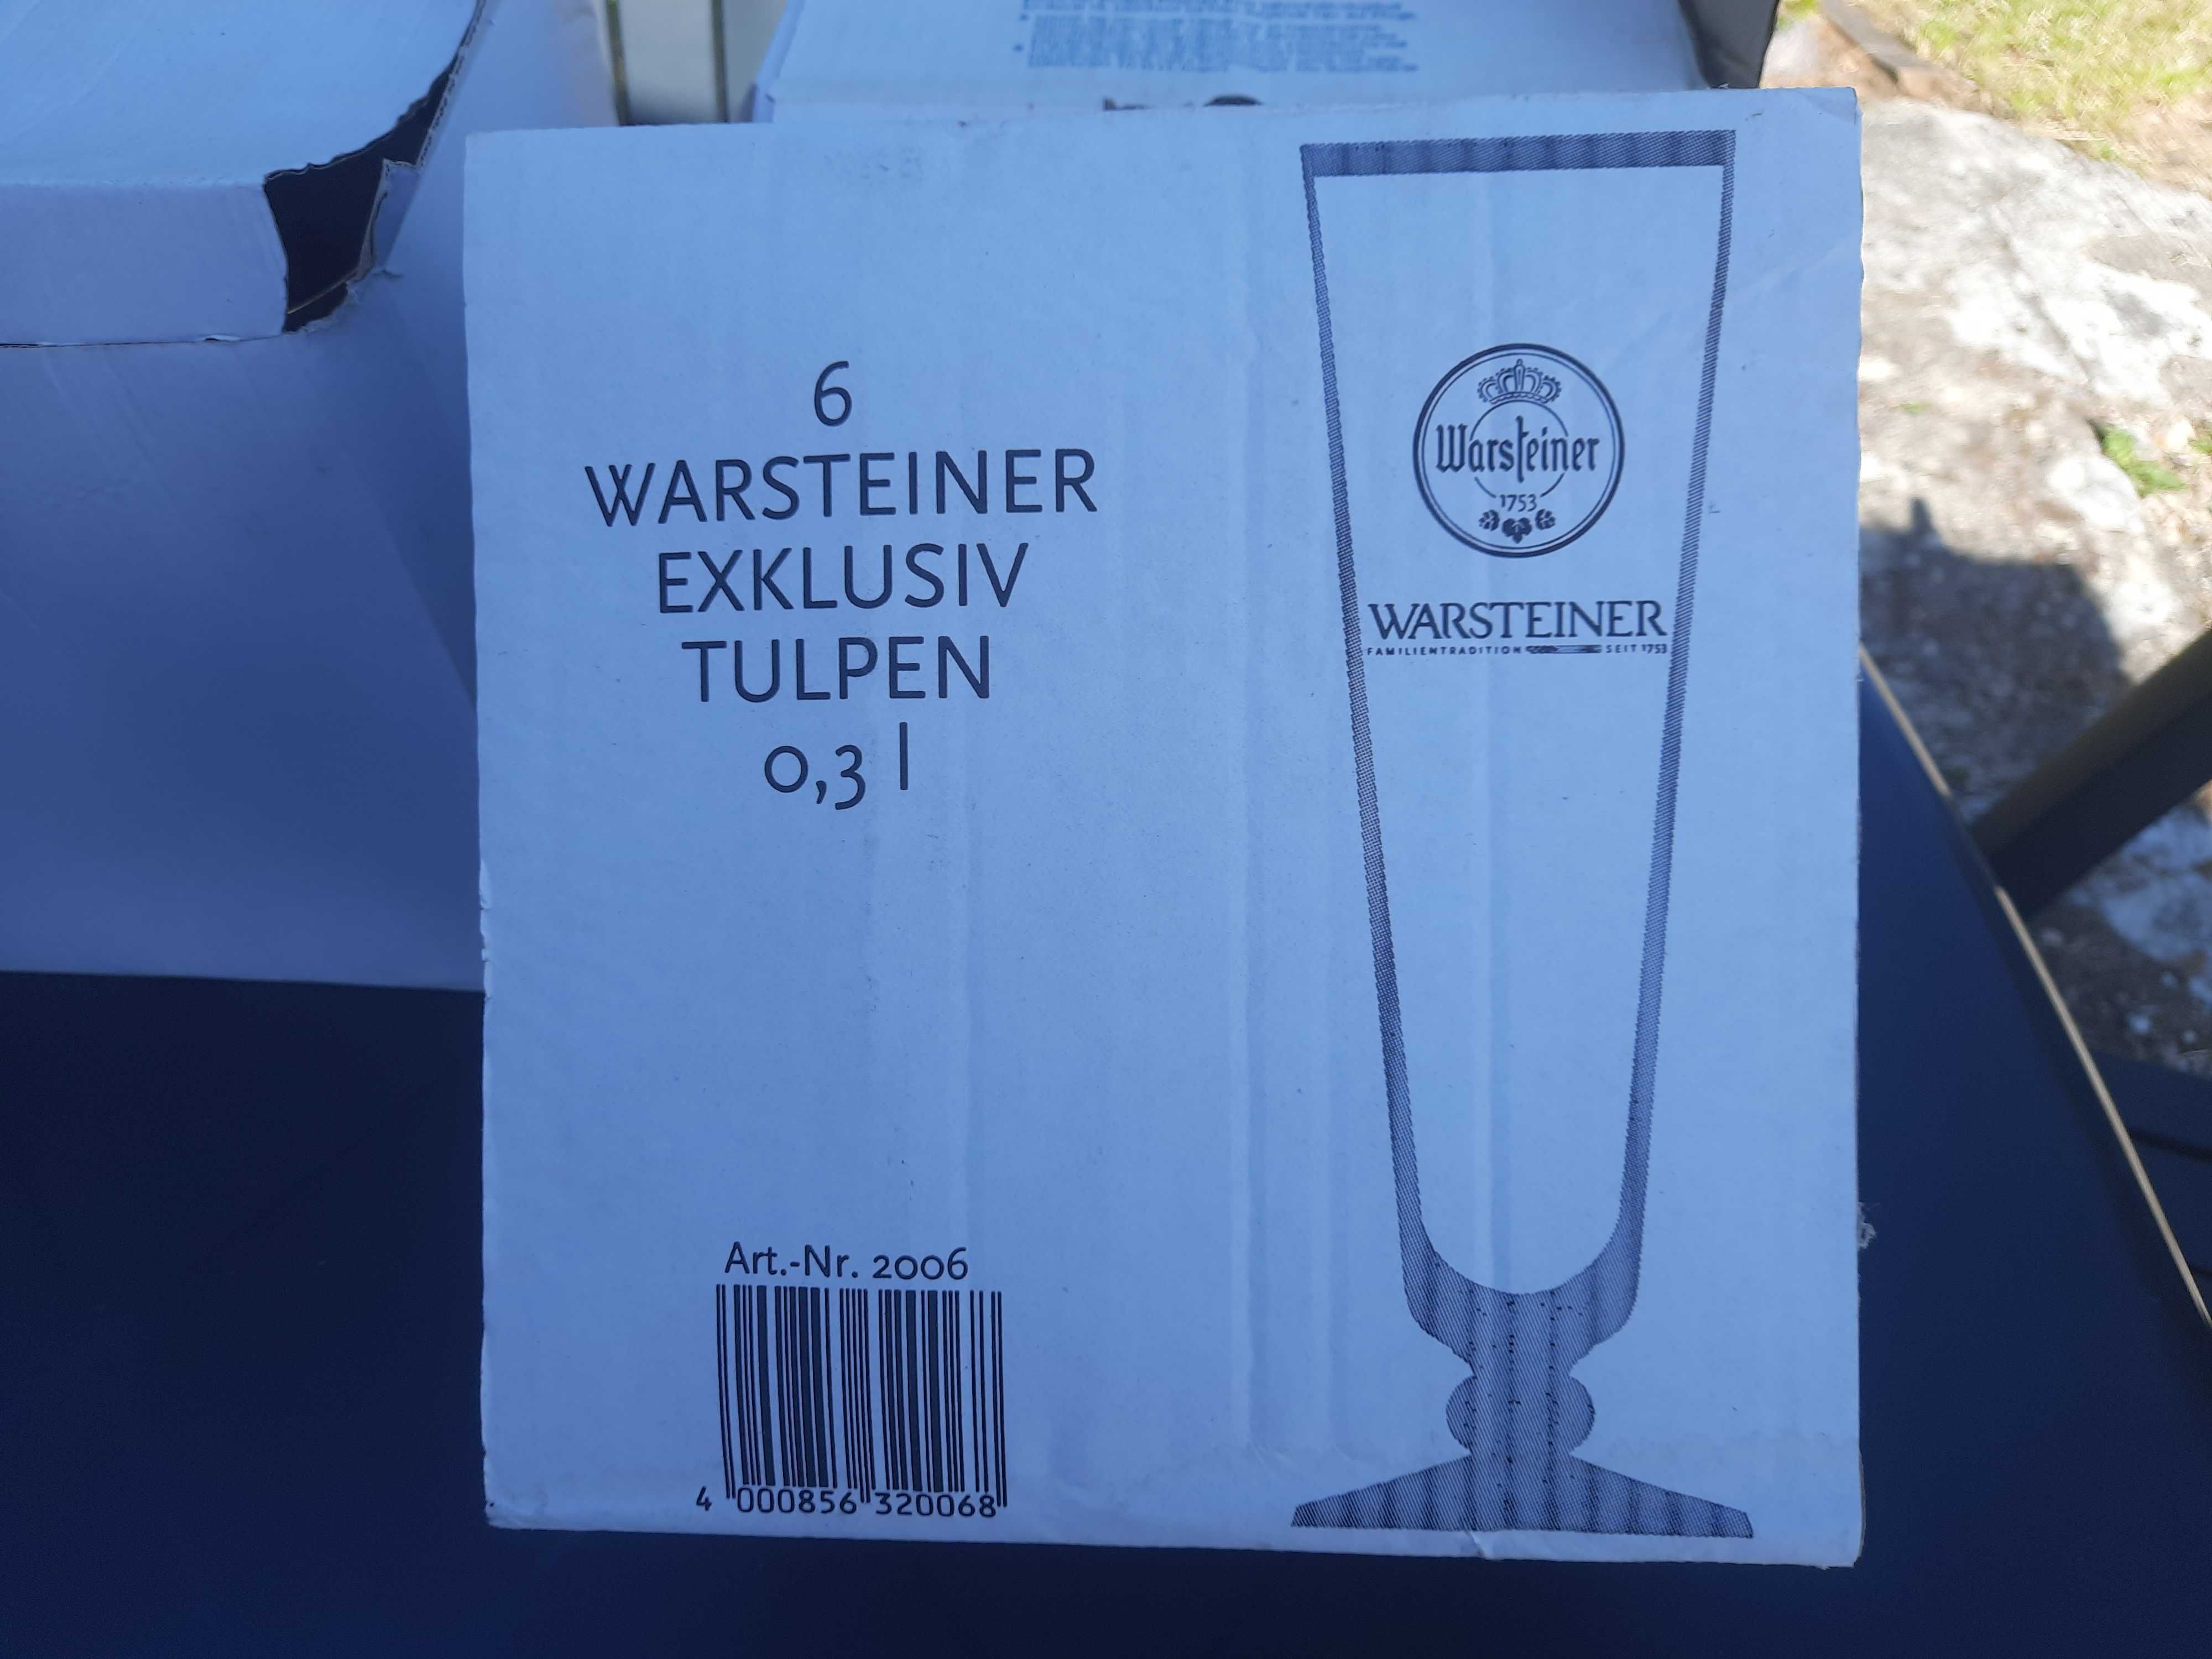 Pokale do piwa Warsteiner 0,3 l szklanka 6 szt kpl